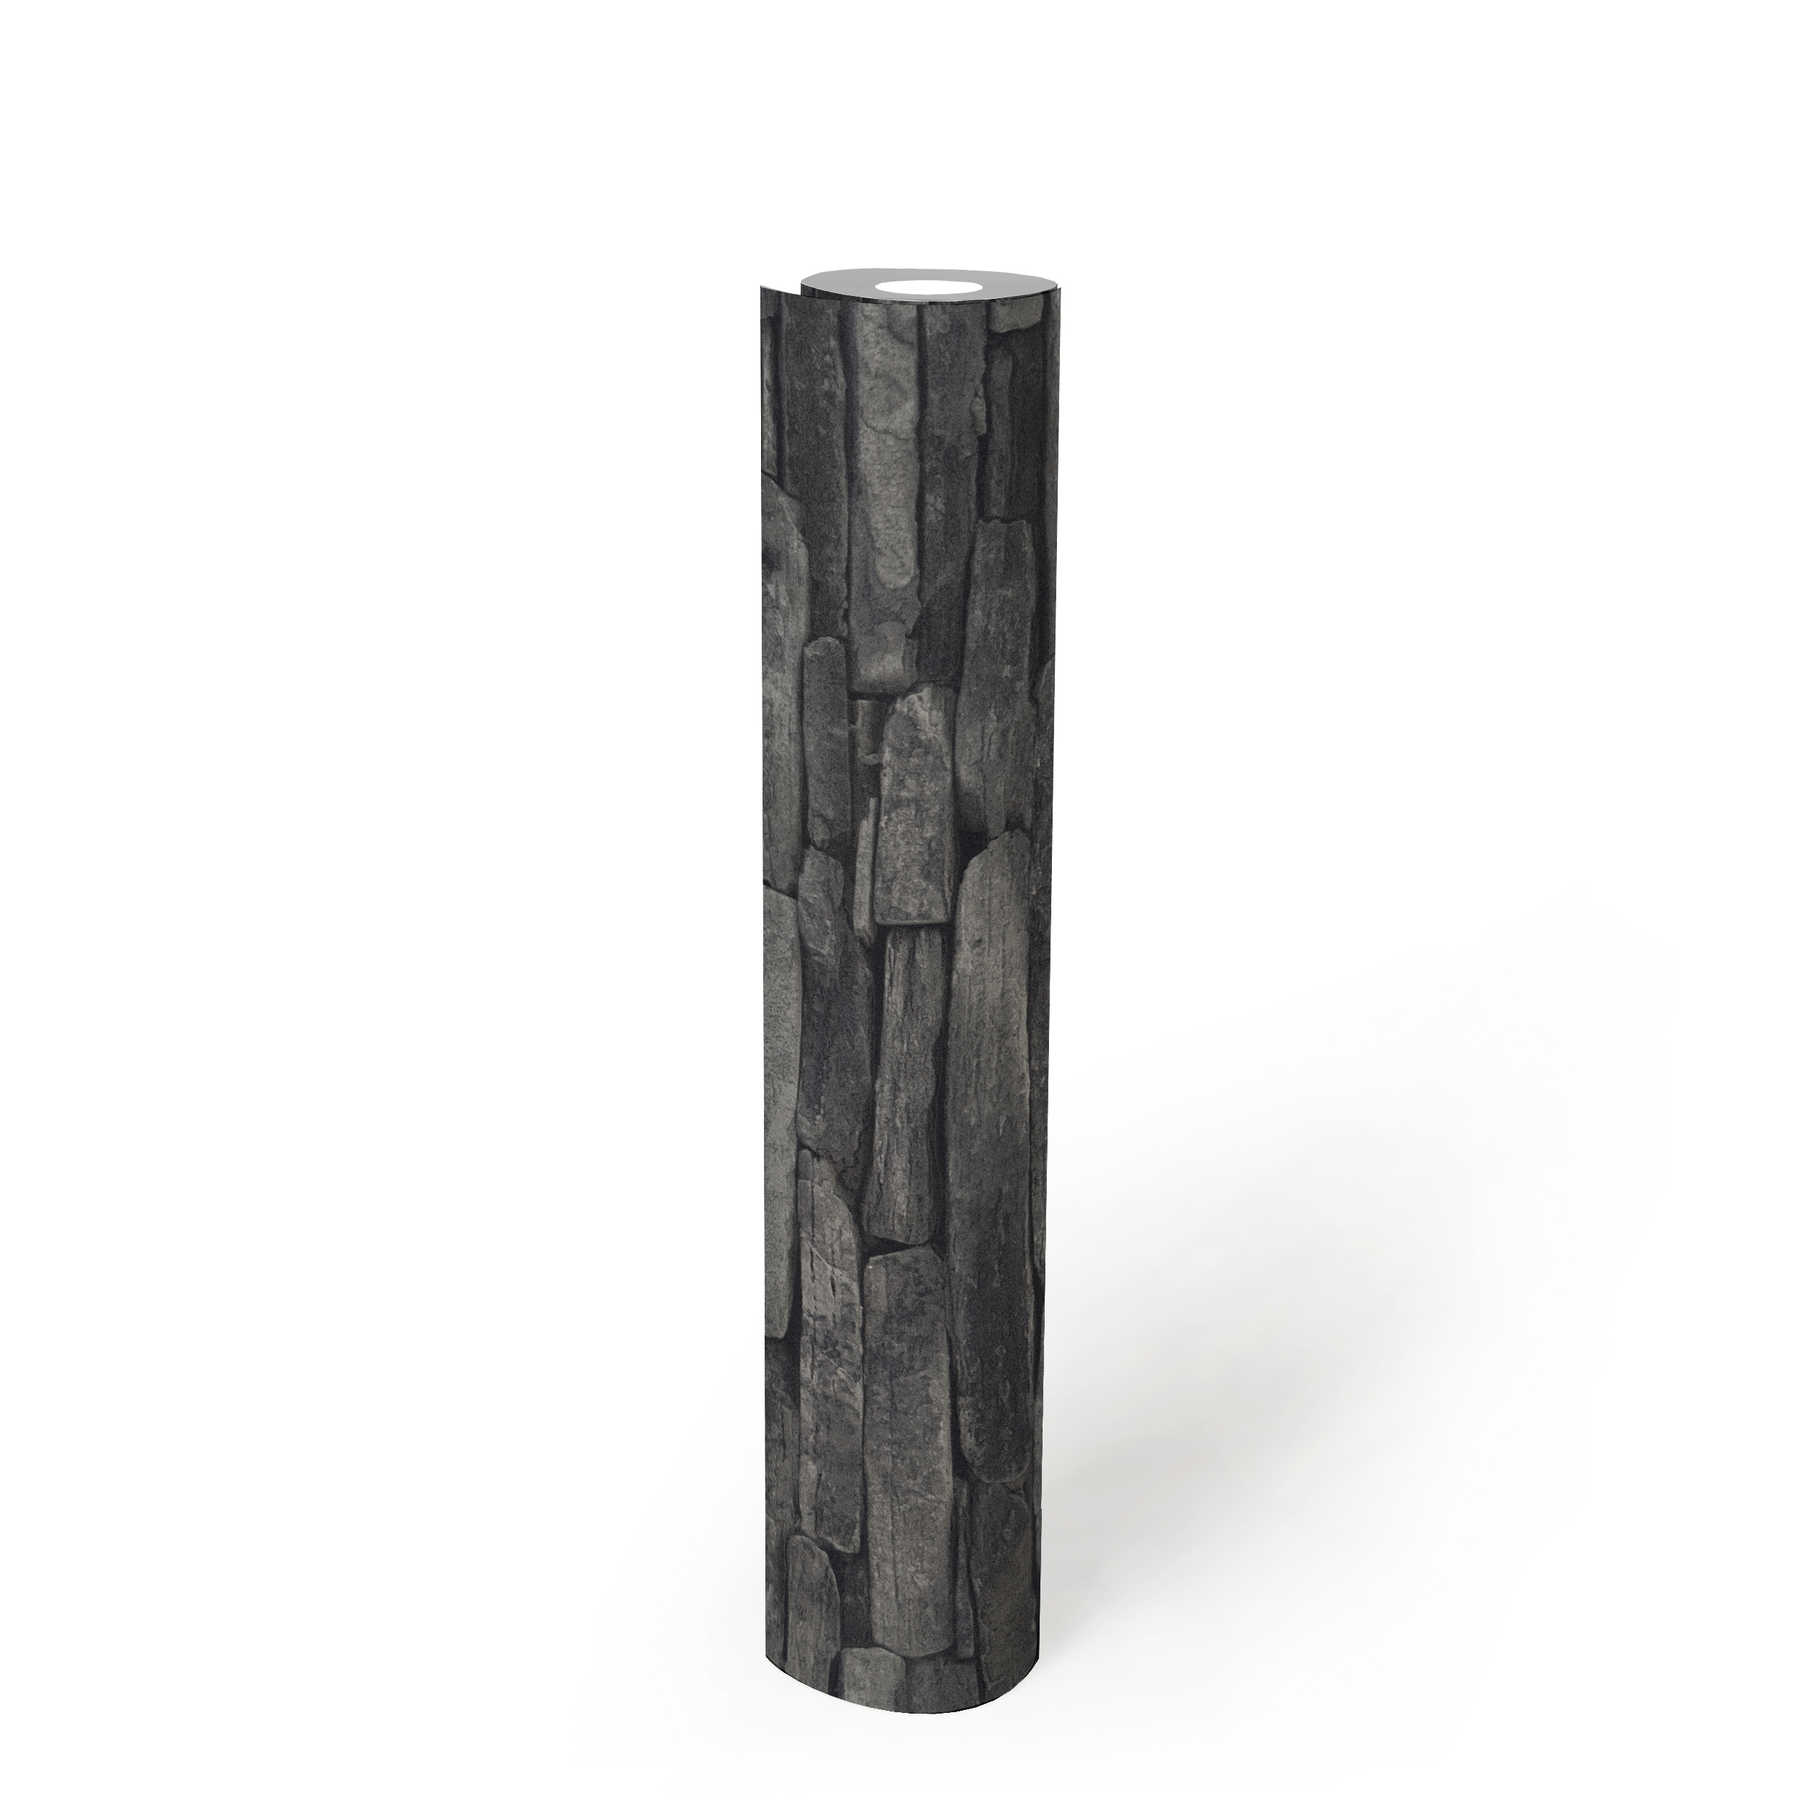             Behang met steenlook, donkere natuurstenen & 3D-effect - grijs, zwart
        